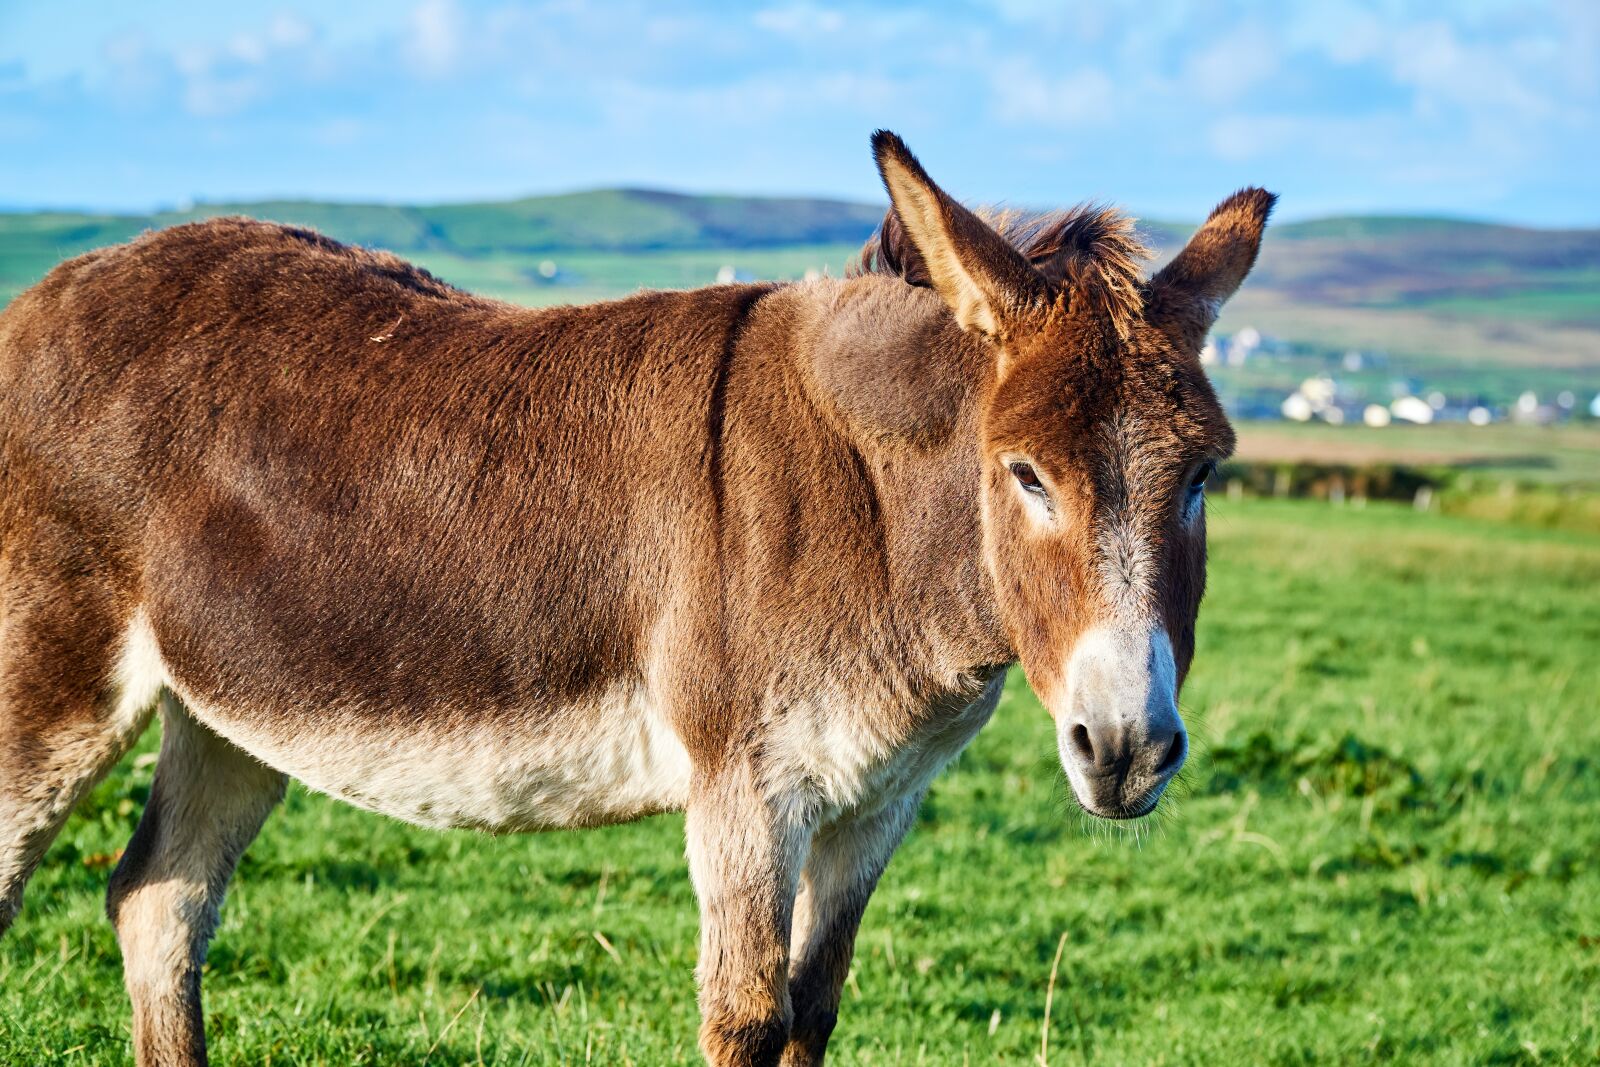 Sony a6000 sample photo. Ireland, donkey, mammal photography